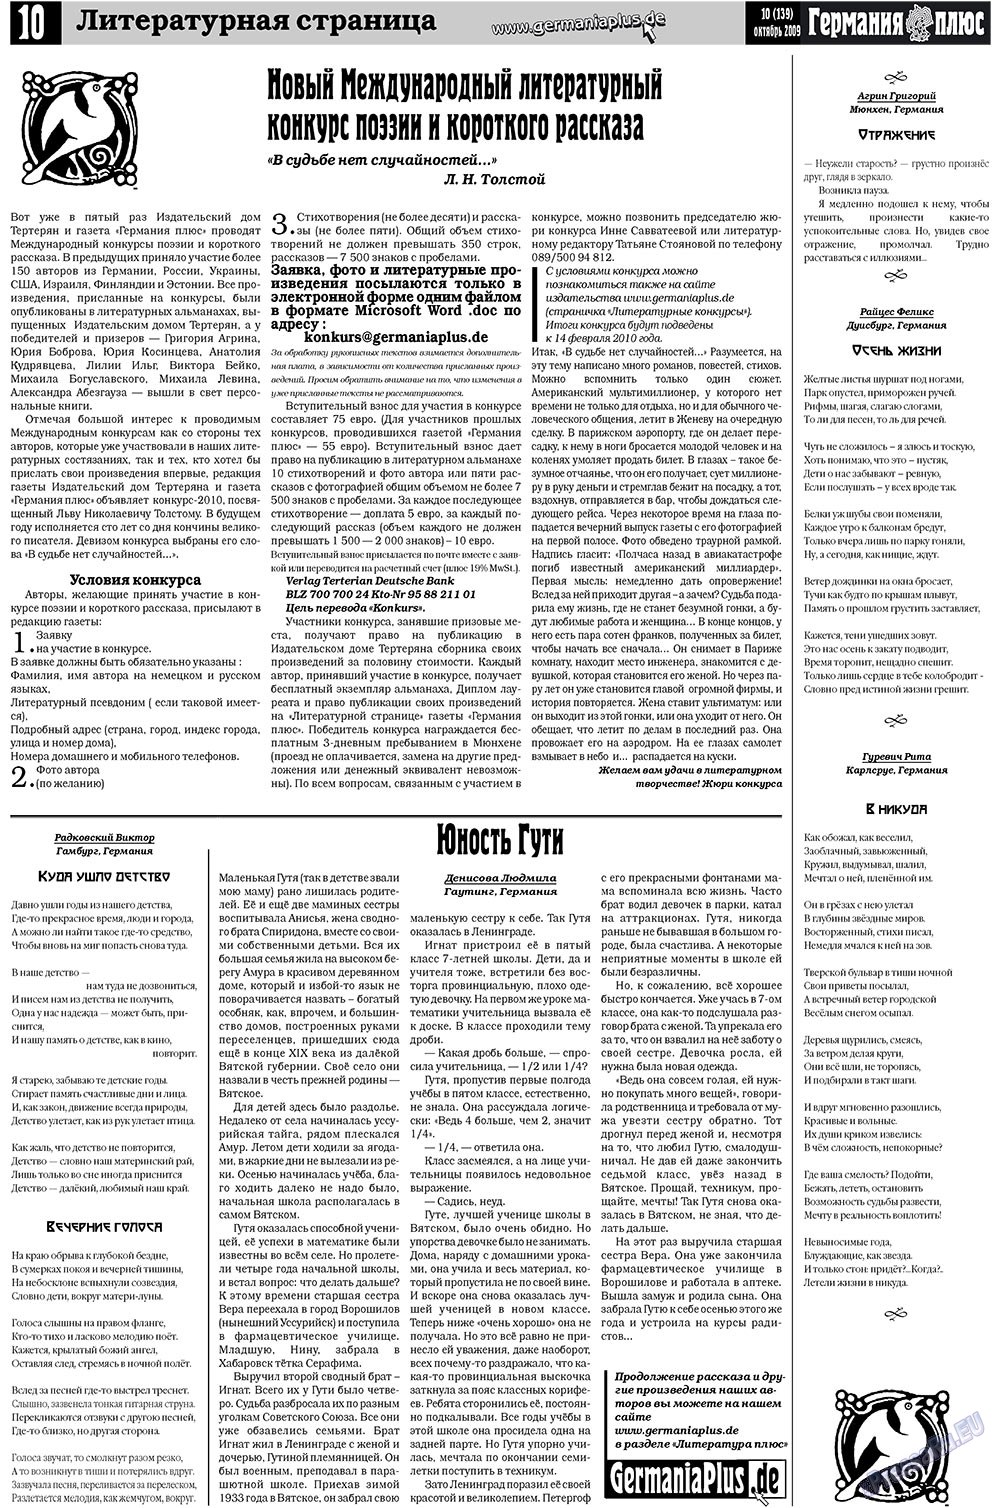 Германия плюс (газета). 2009 год, номер 10, стр. 10